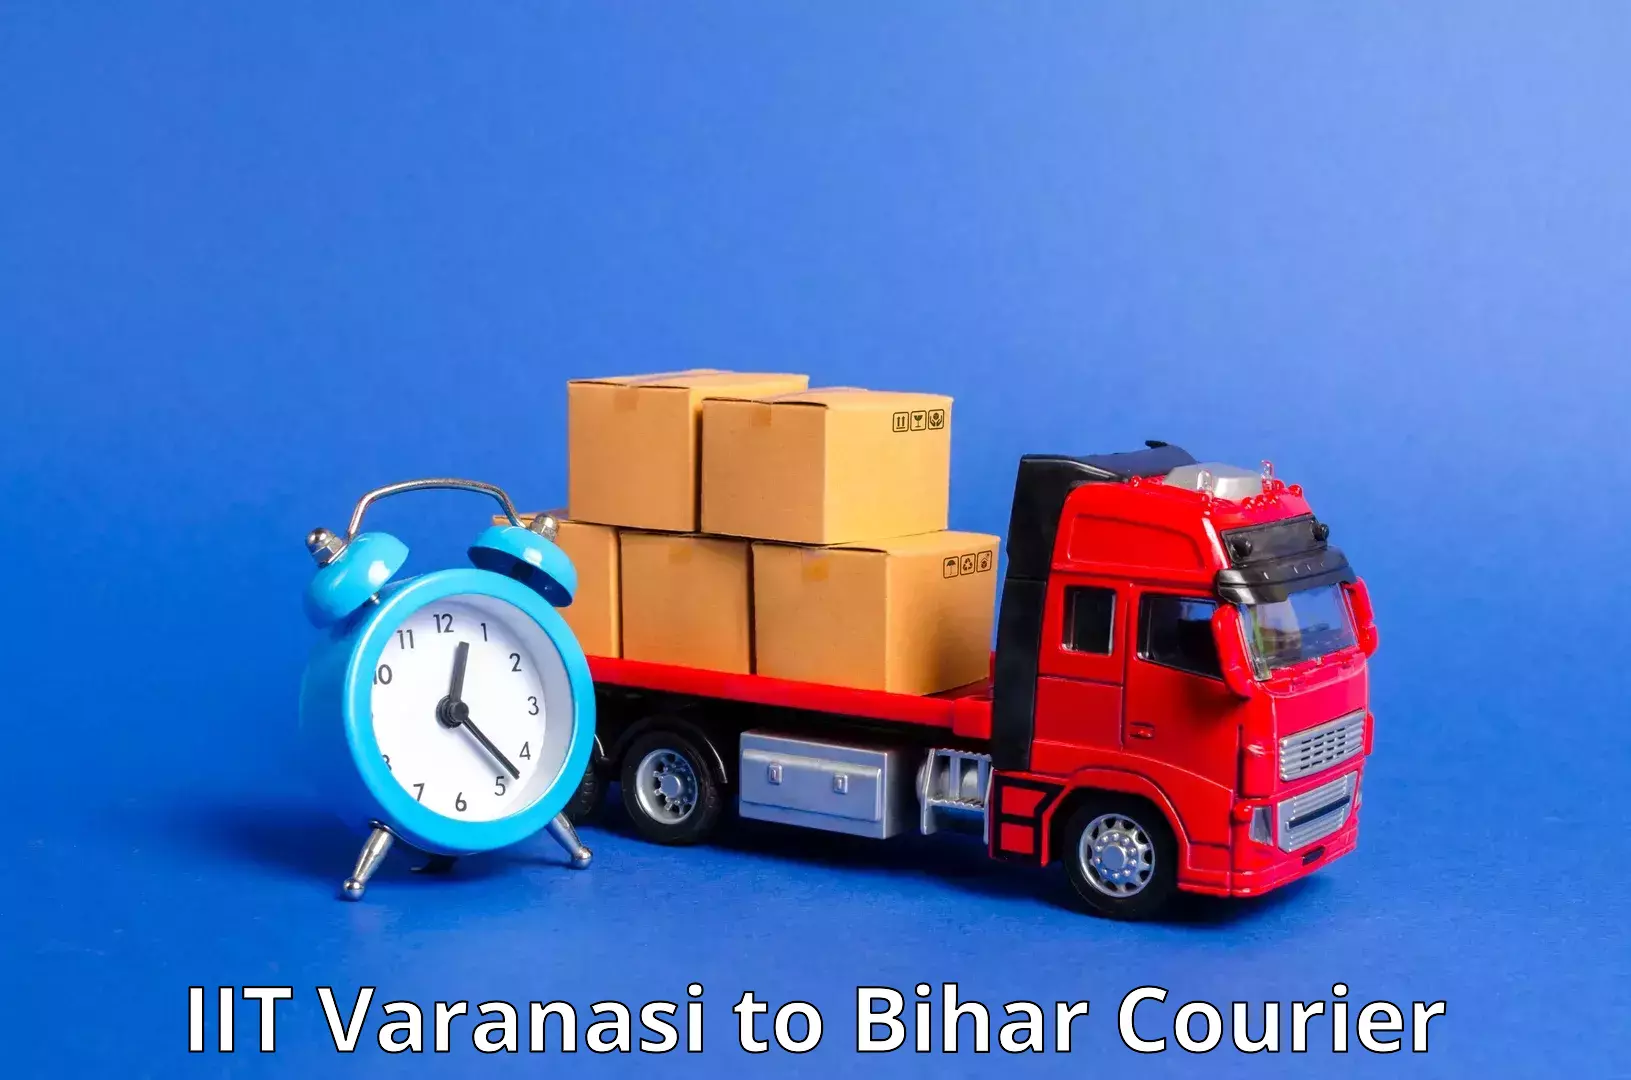 Express postal services IIT Varanasi to Saran